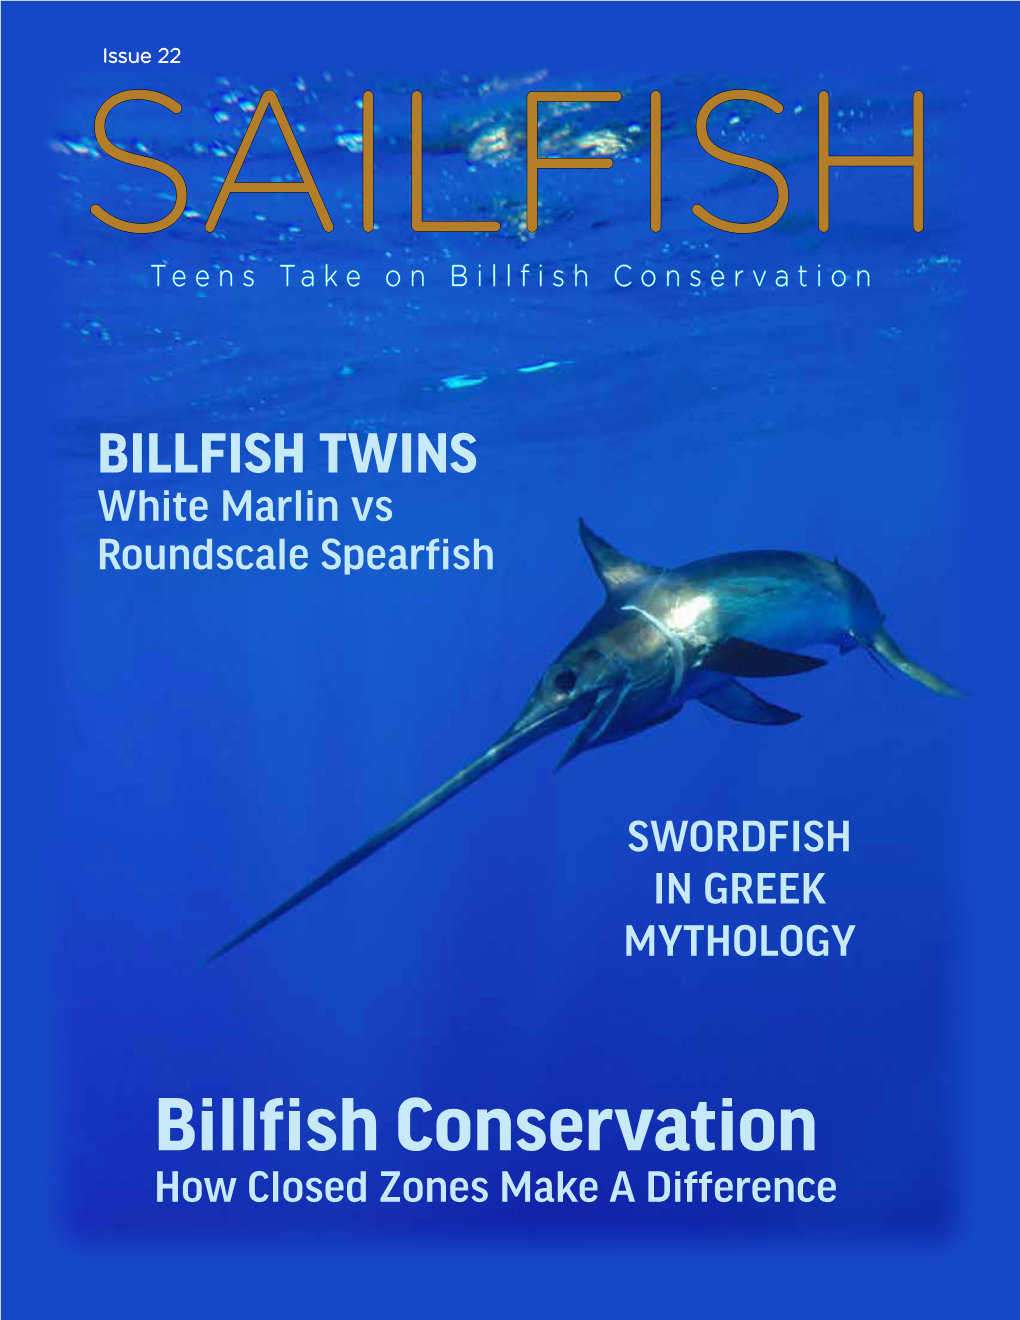 Billfish Conservation